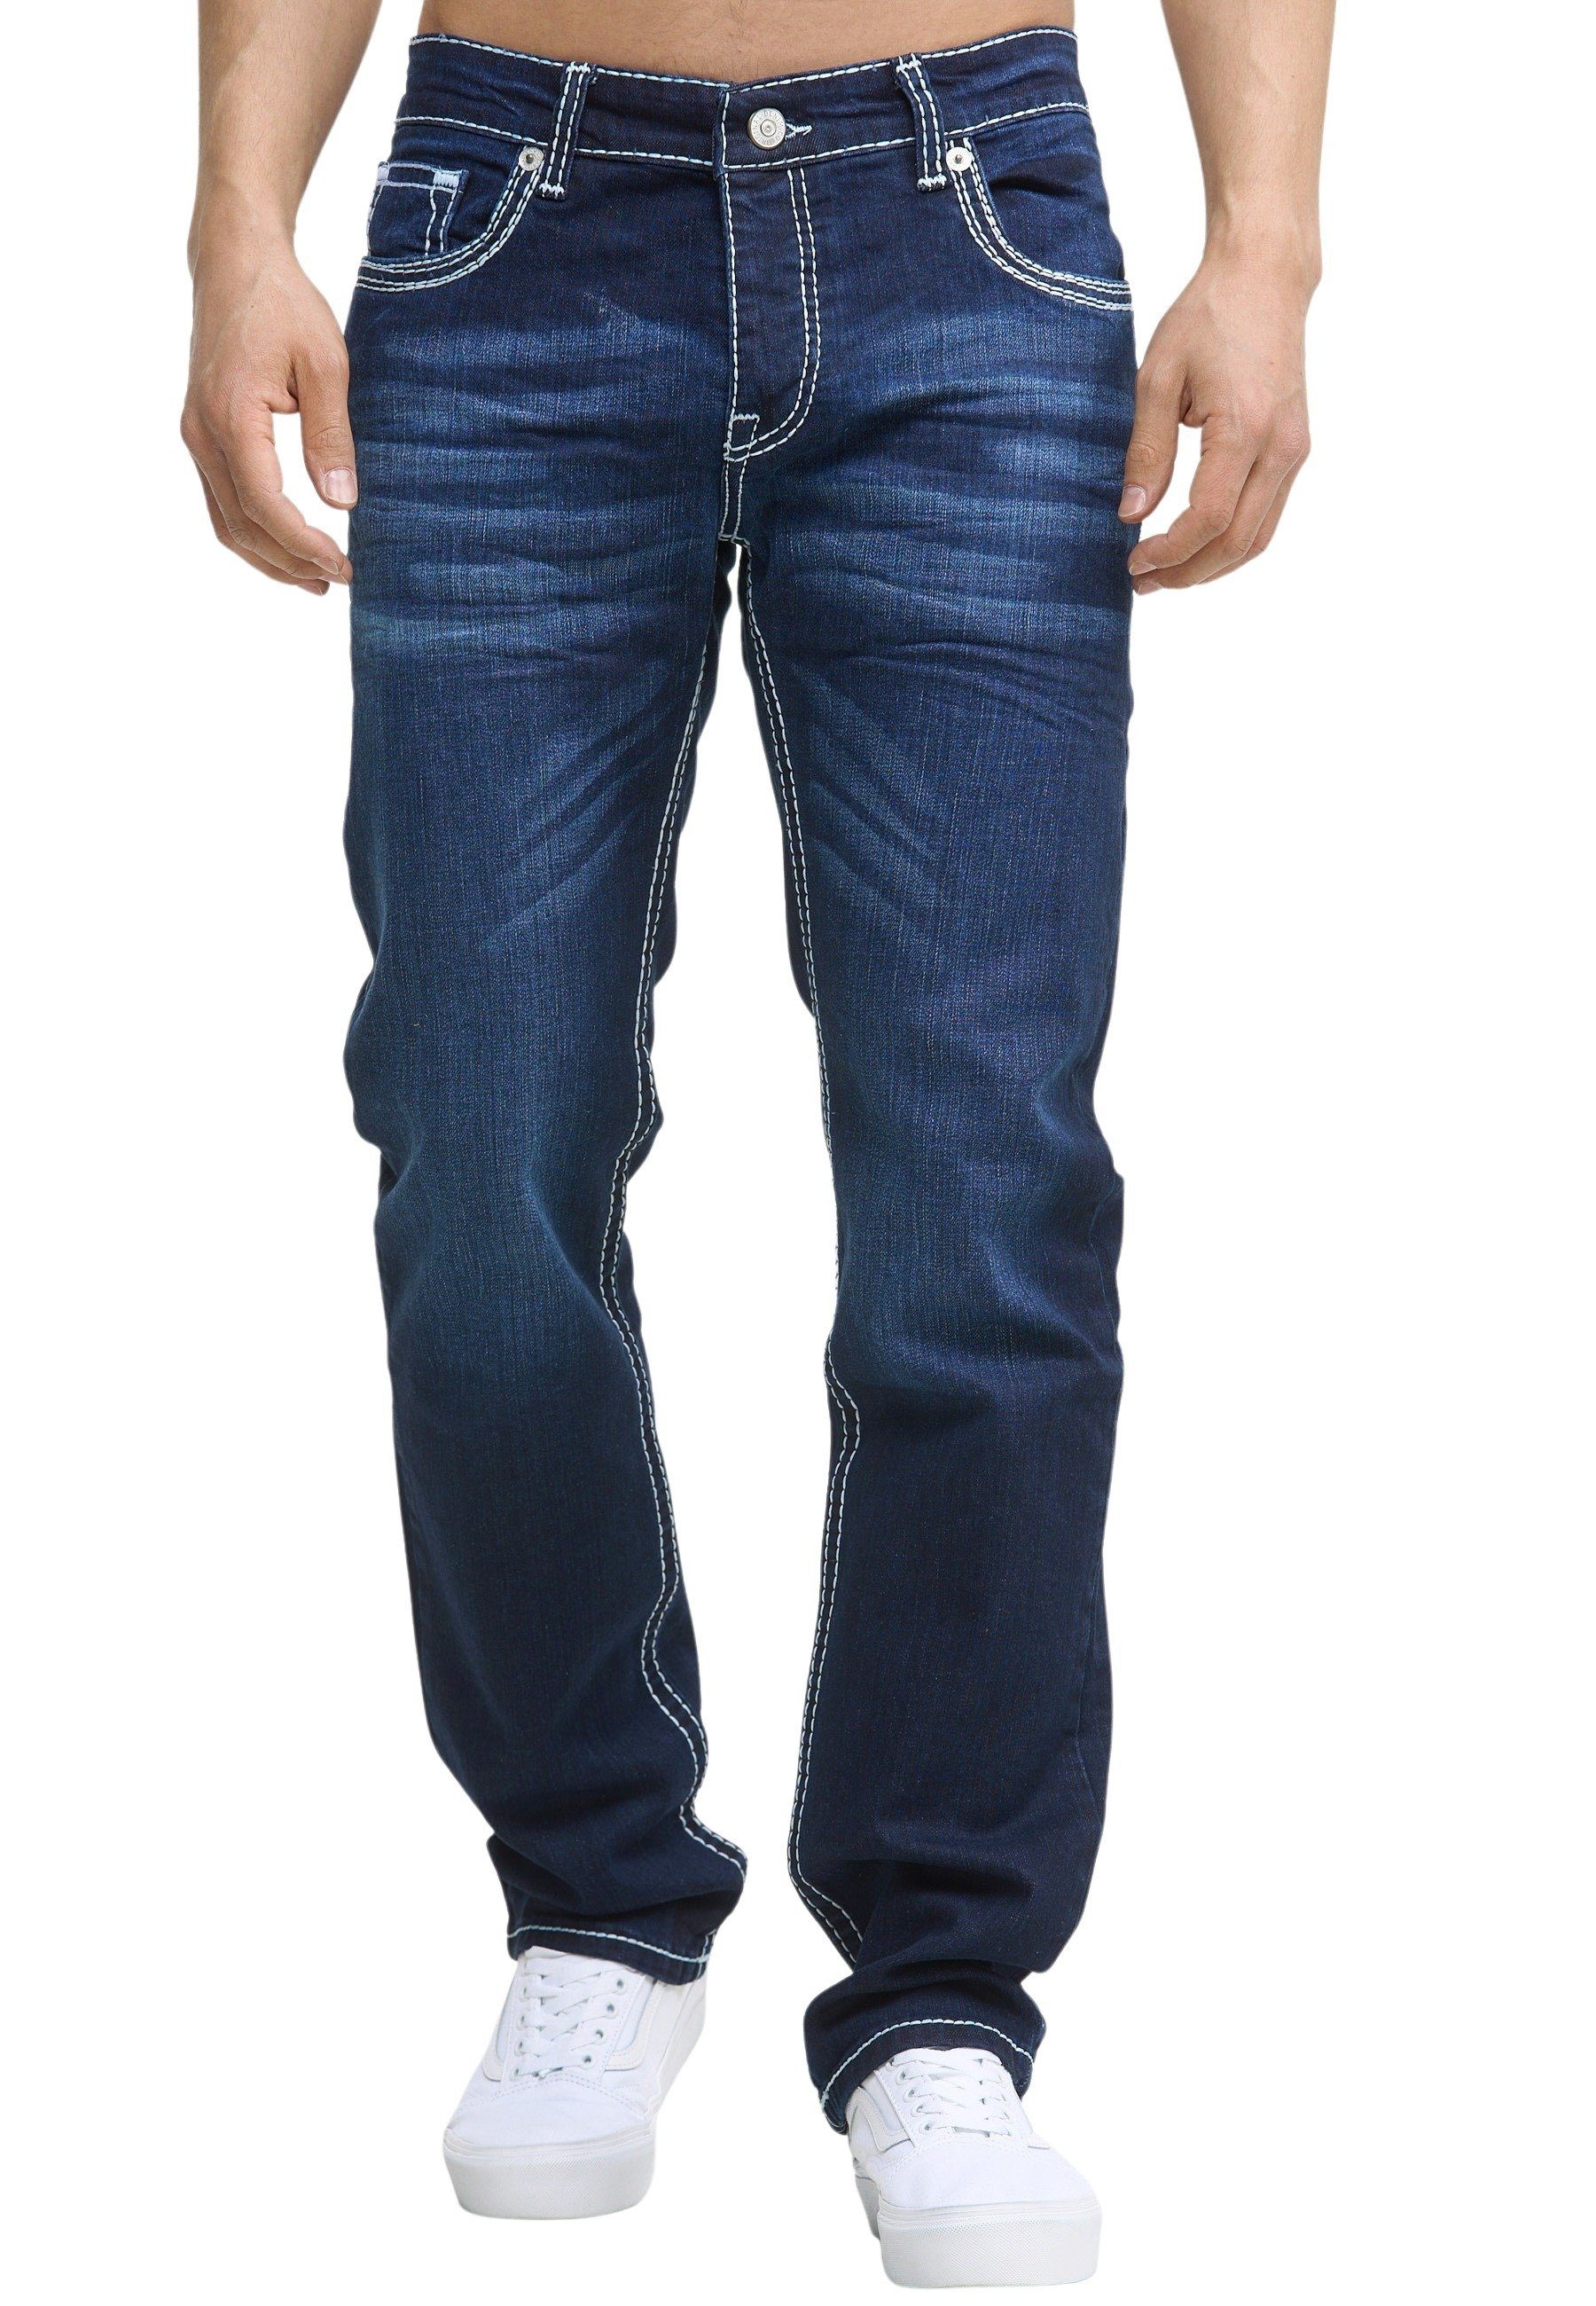 905 Fit Regular-fit-Jeans Code47 Regular dark blue Pocket Code47 Five Bootcut Hose Jeans Denim Männer Herren